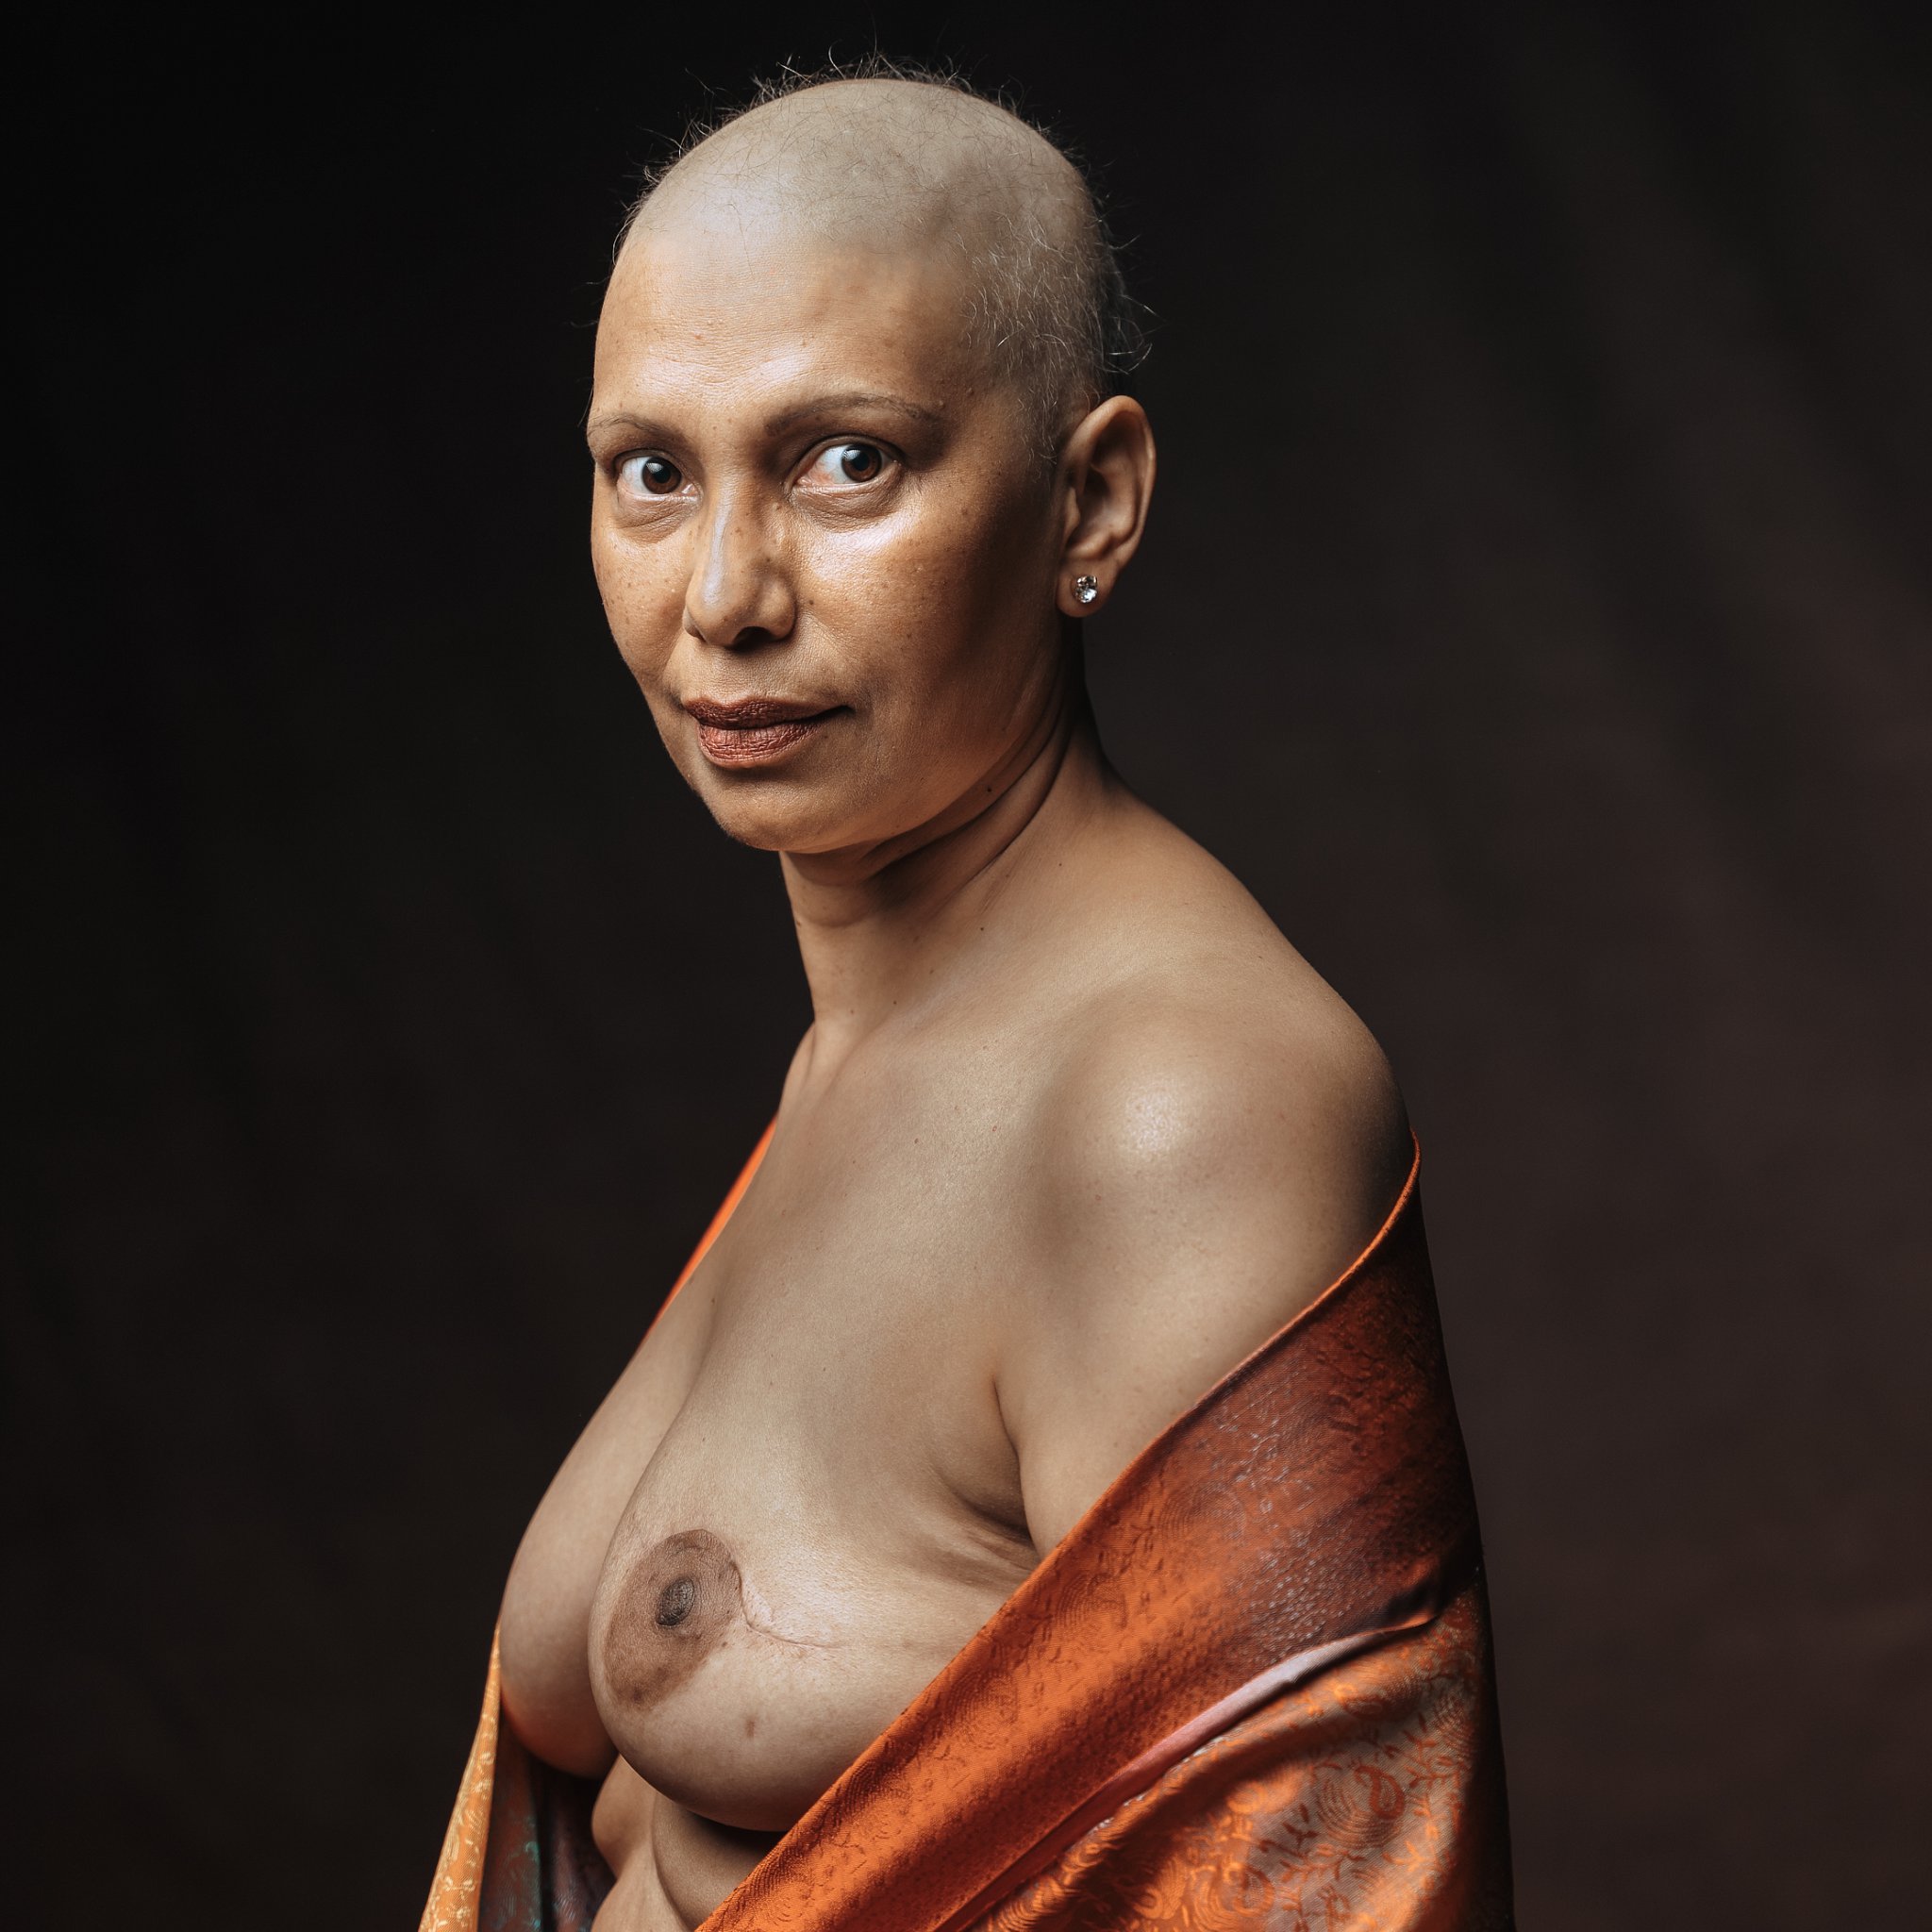 une femme qui a le cancer du sein, pose avec sa cicatrice, une femme qpose en s'amusant, seance photo pour lutter contre le cancer du sein